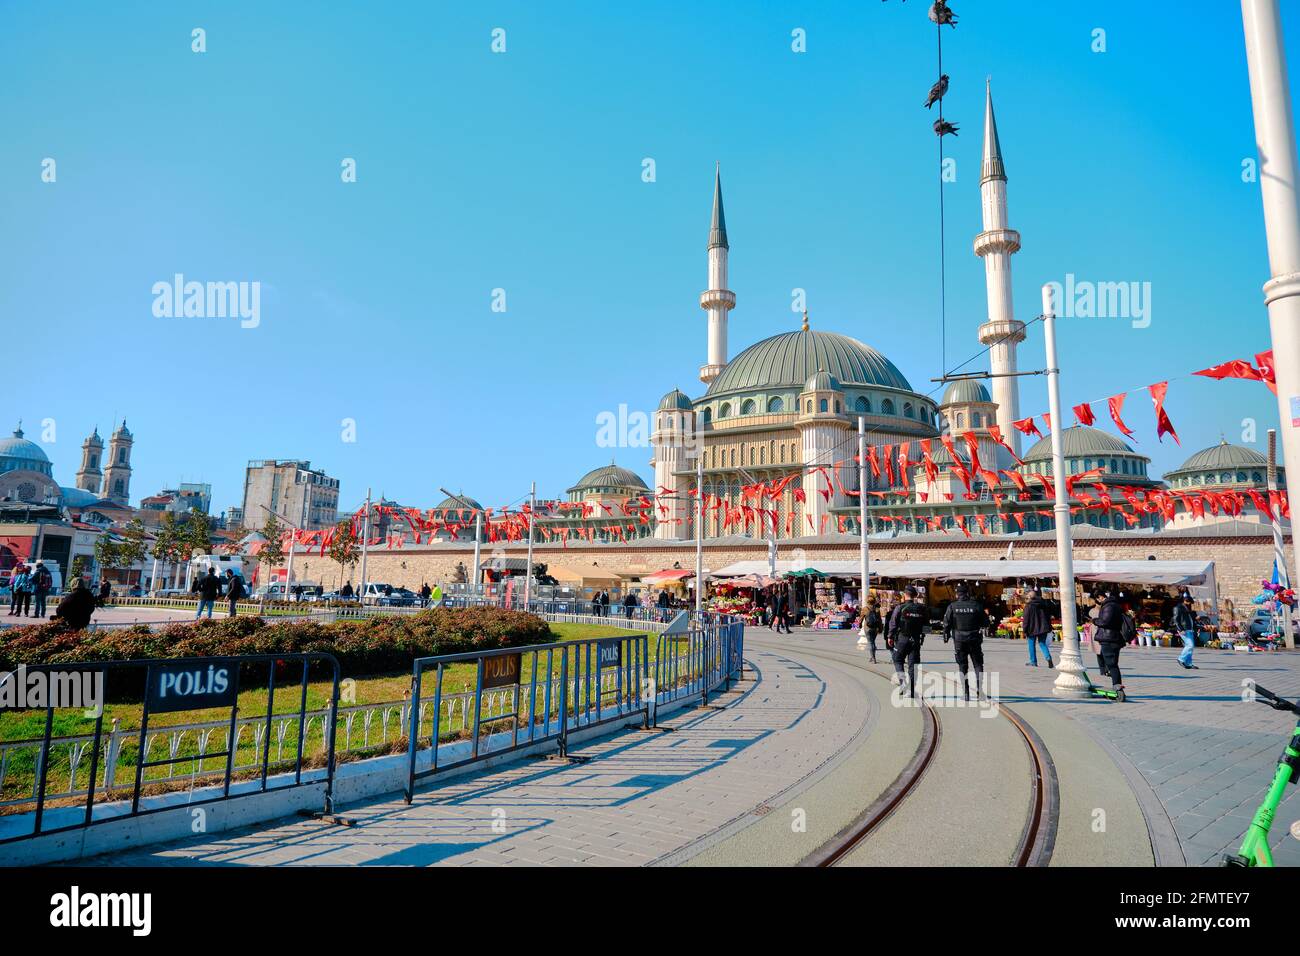 La più famosa piazza taksim durante la mattina con i dettagli di taksim, recentemente costruito moschea taksim e molte bandiere turche, polizia e turisti Foto Stock